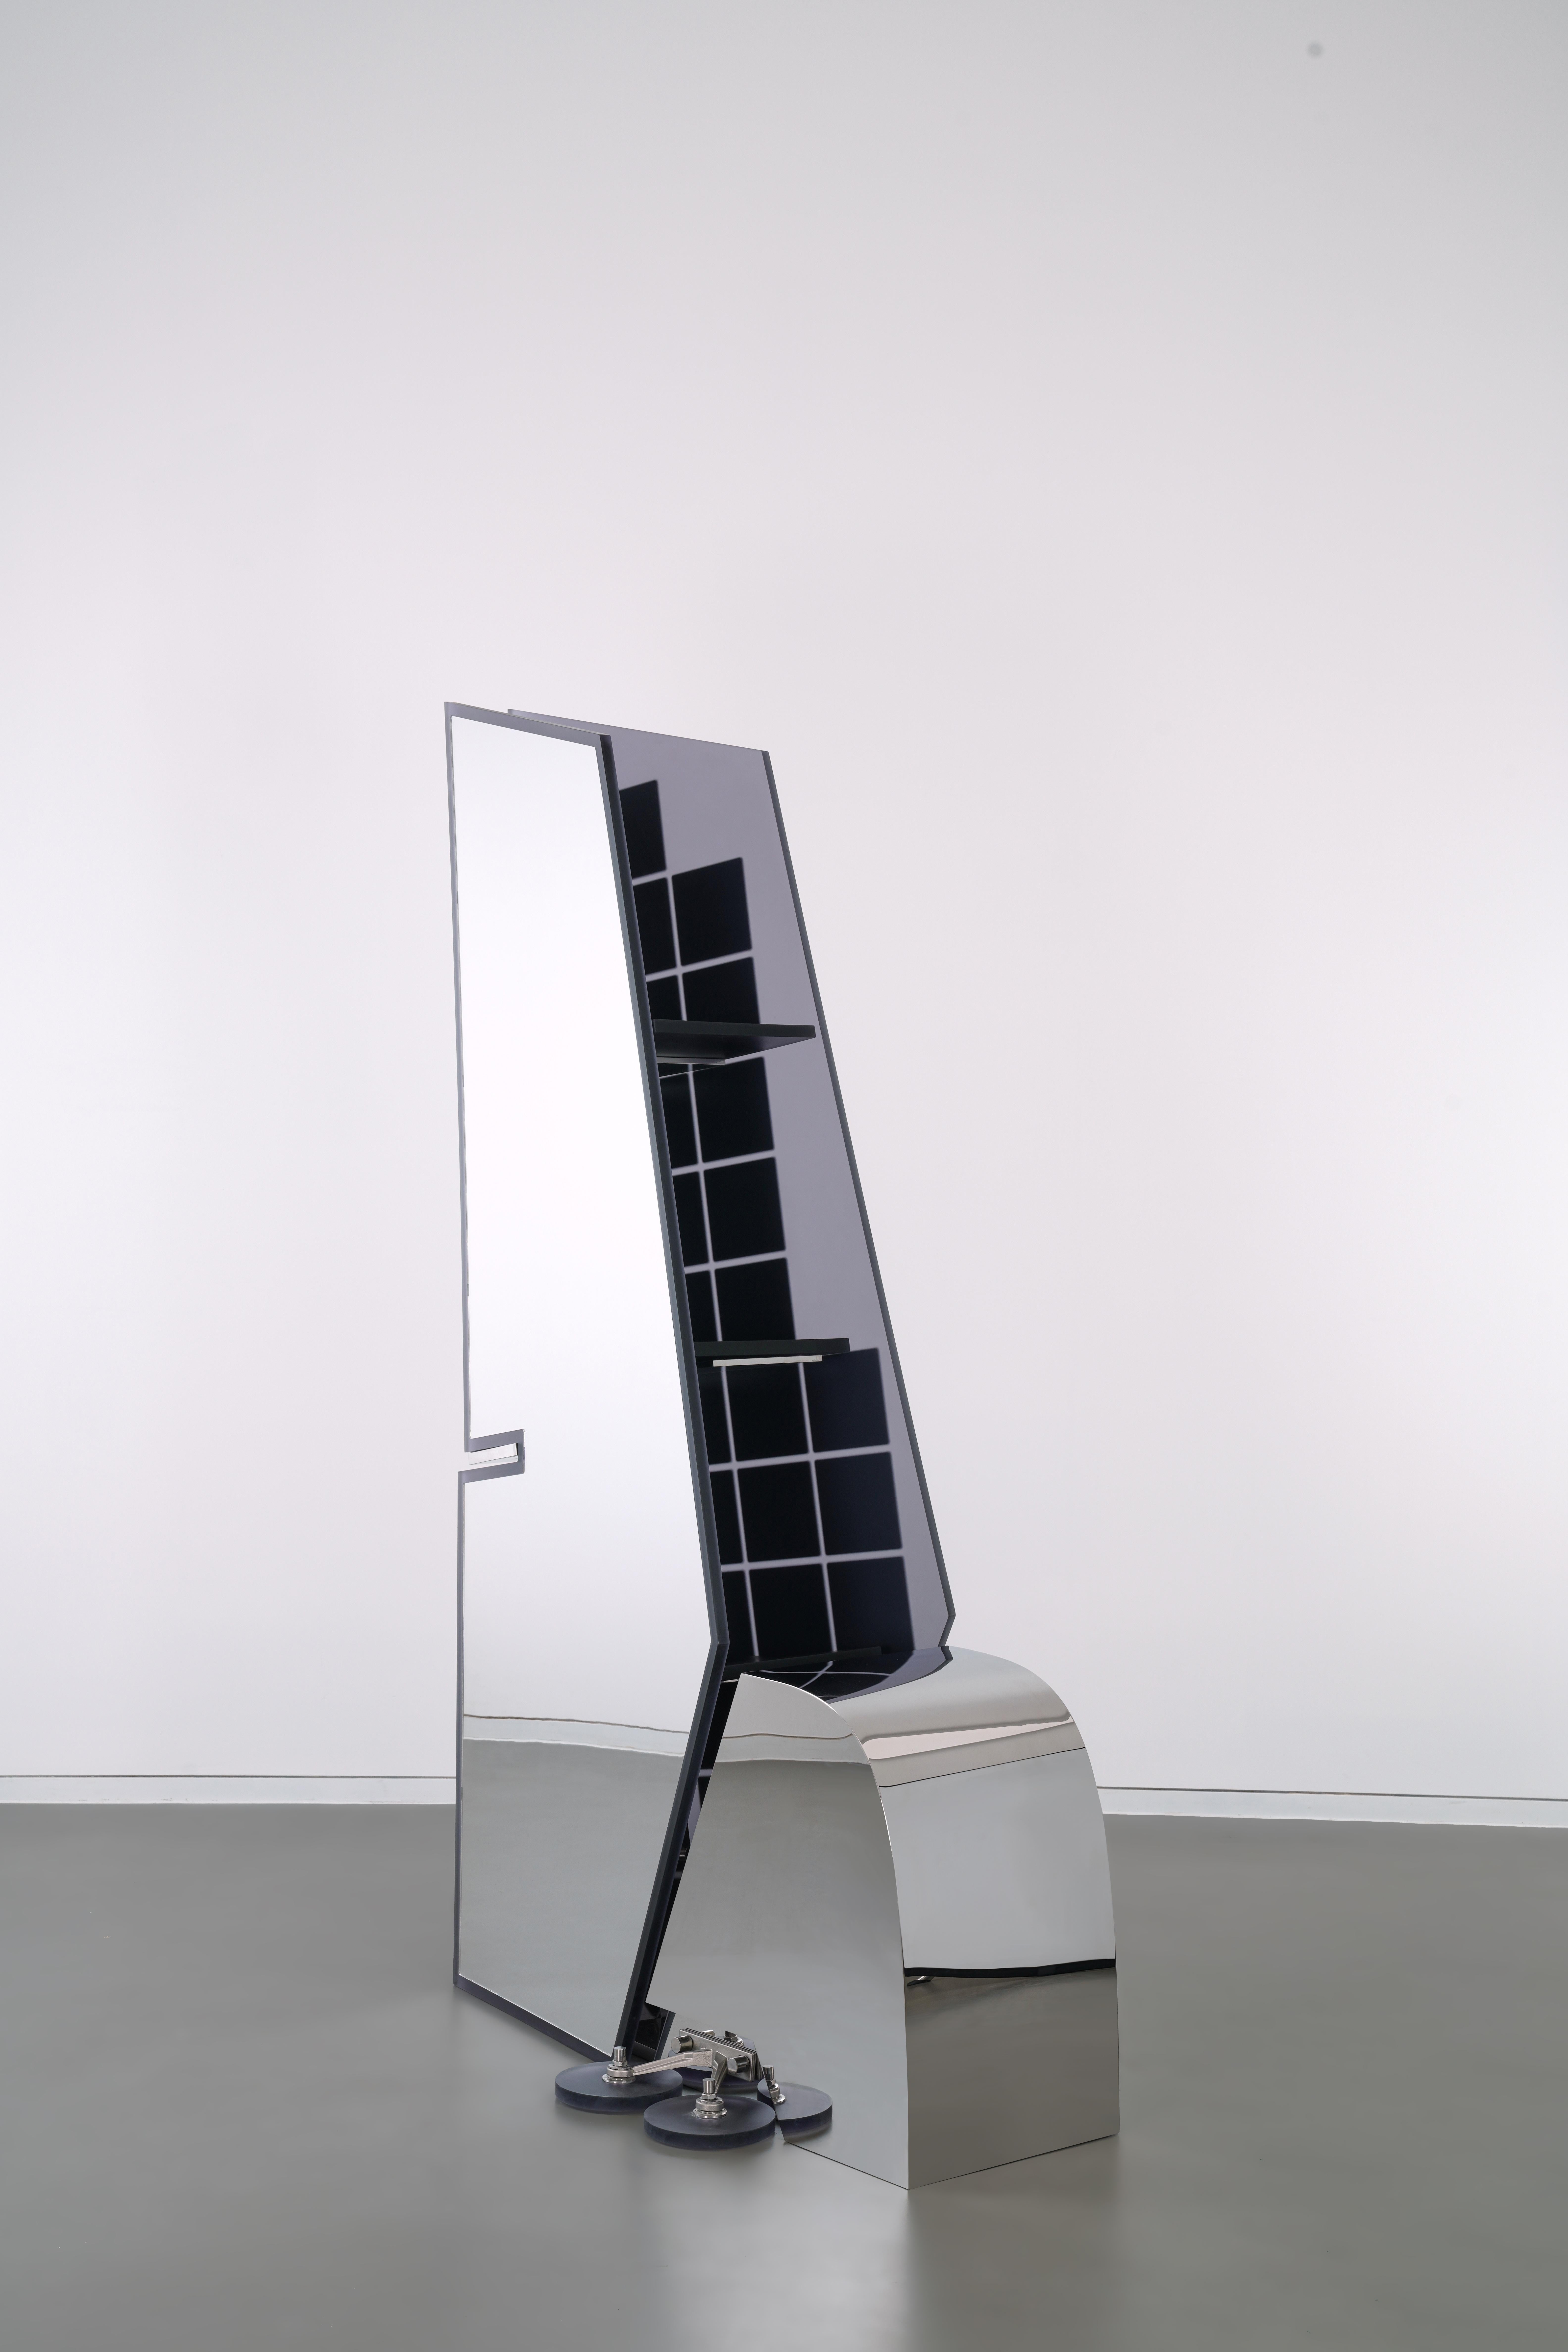 Reality Reflection est une représentation abstraite de la dérive d'un avion, avec un petit miroir carré en forme de bouclier thermique d'un côté et un miroir complet de l'autre. Les tuiles d'isolation thermique ont été inventées pour protéger le